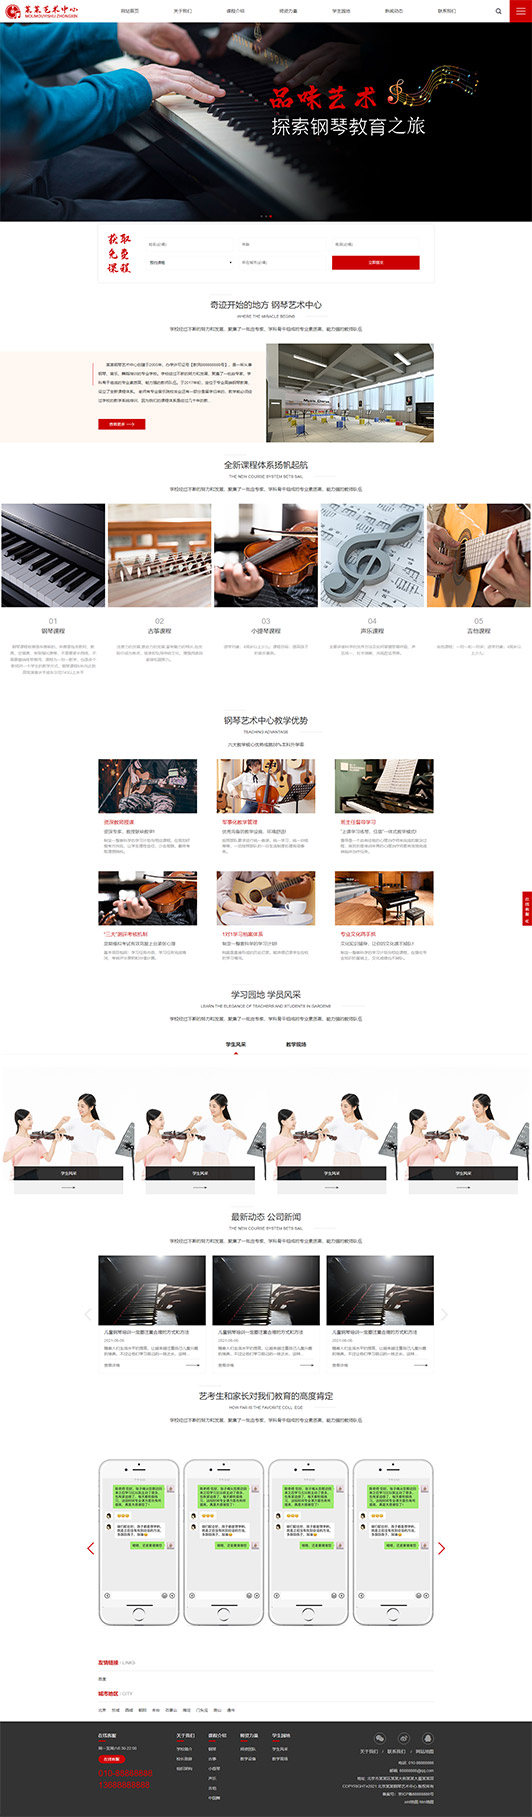 南平钢琴艺术培训公司响应式企业网站